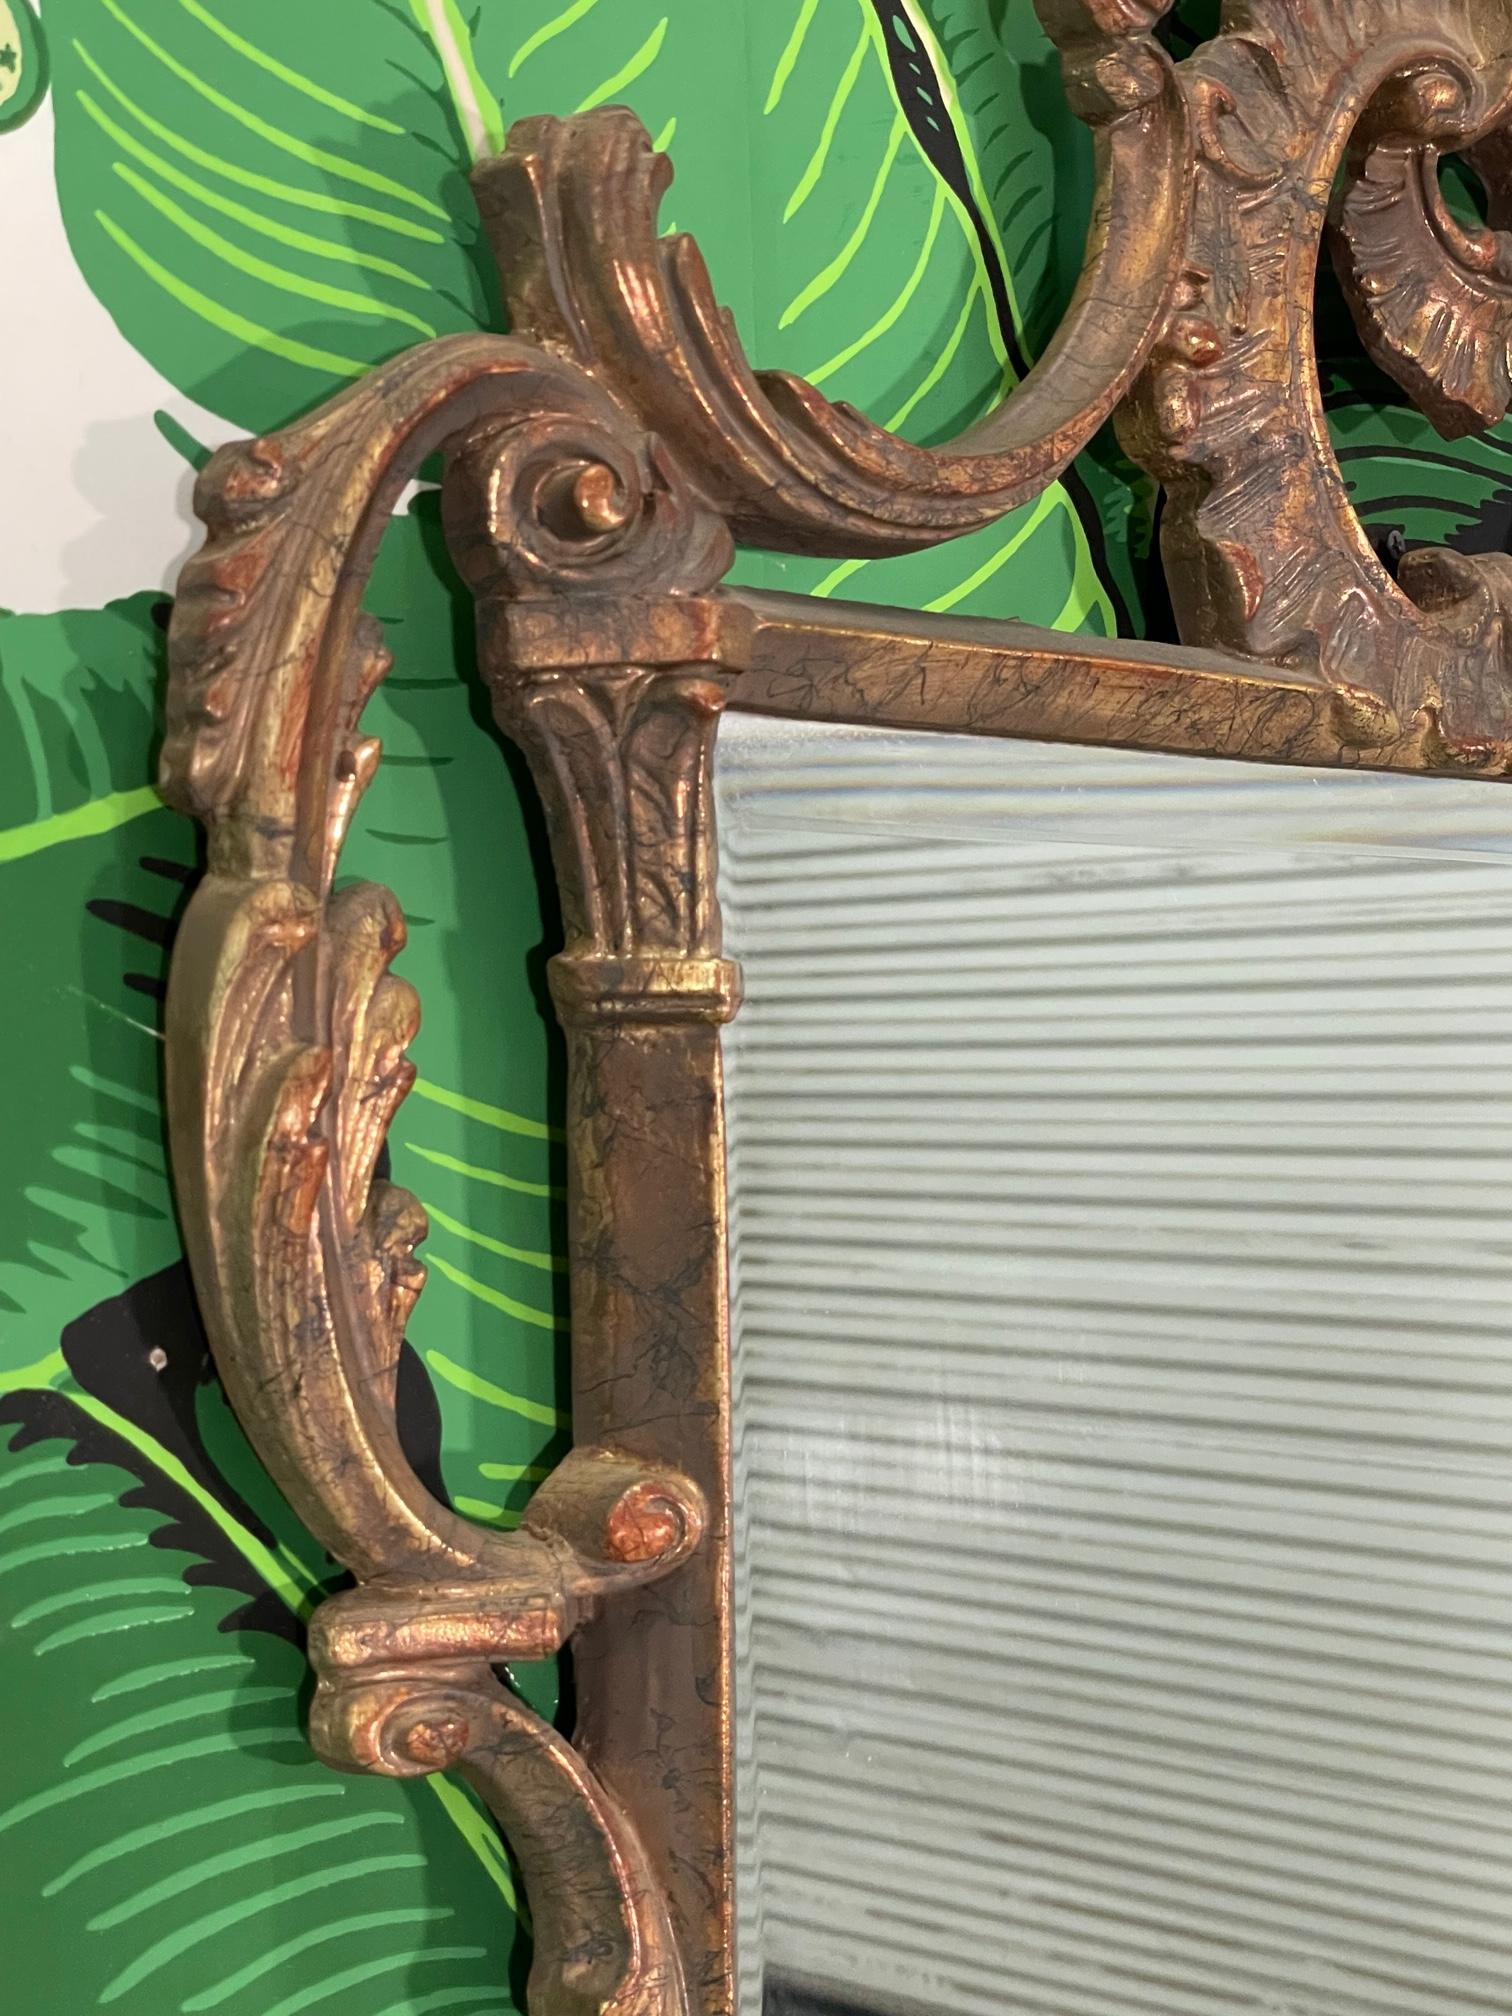 Ce miroir mural de style rococo présente un cadre sculptural orné, moulé en résine composite. Bon état avec des imperfections correspondant à l'âge, voir les photos pour les détails de l'état.
Pour un devis d'expédition vers votre code postal exact,